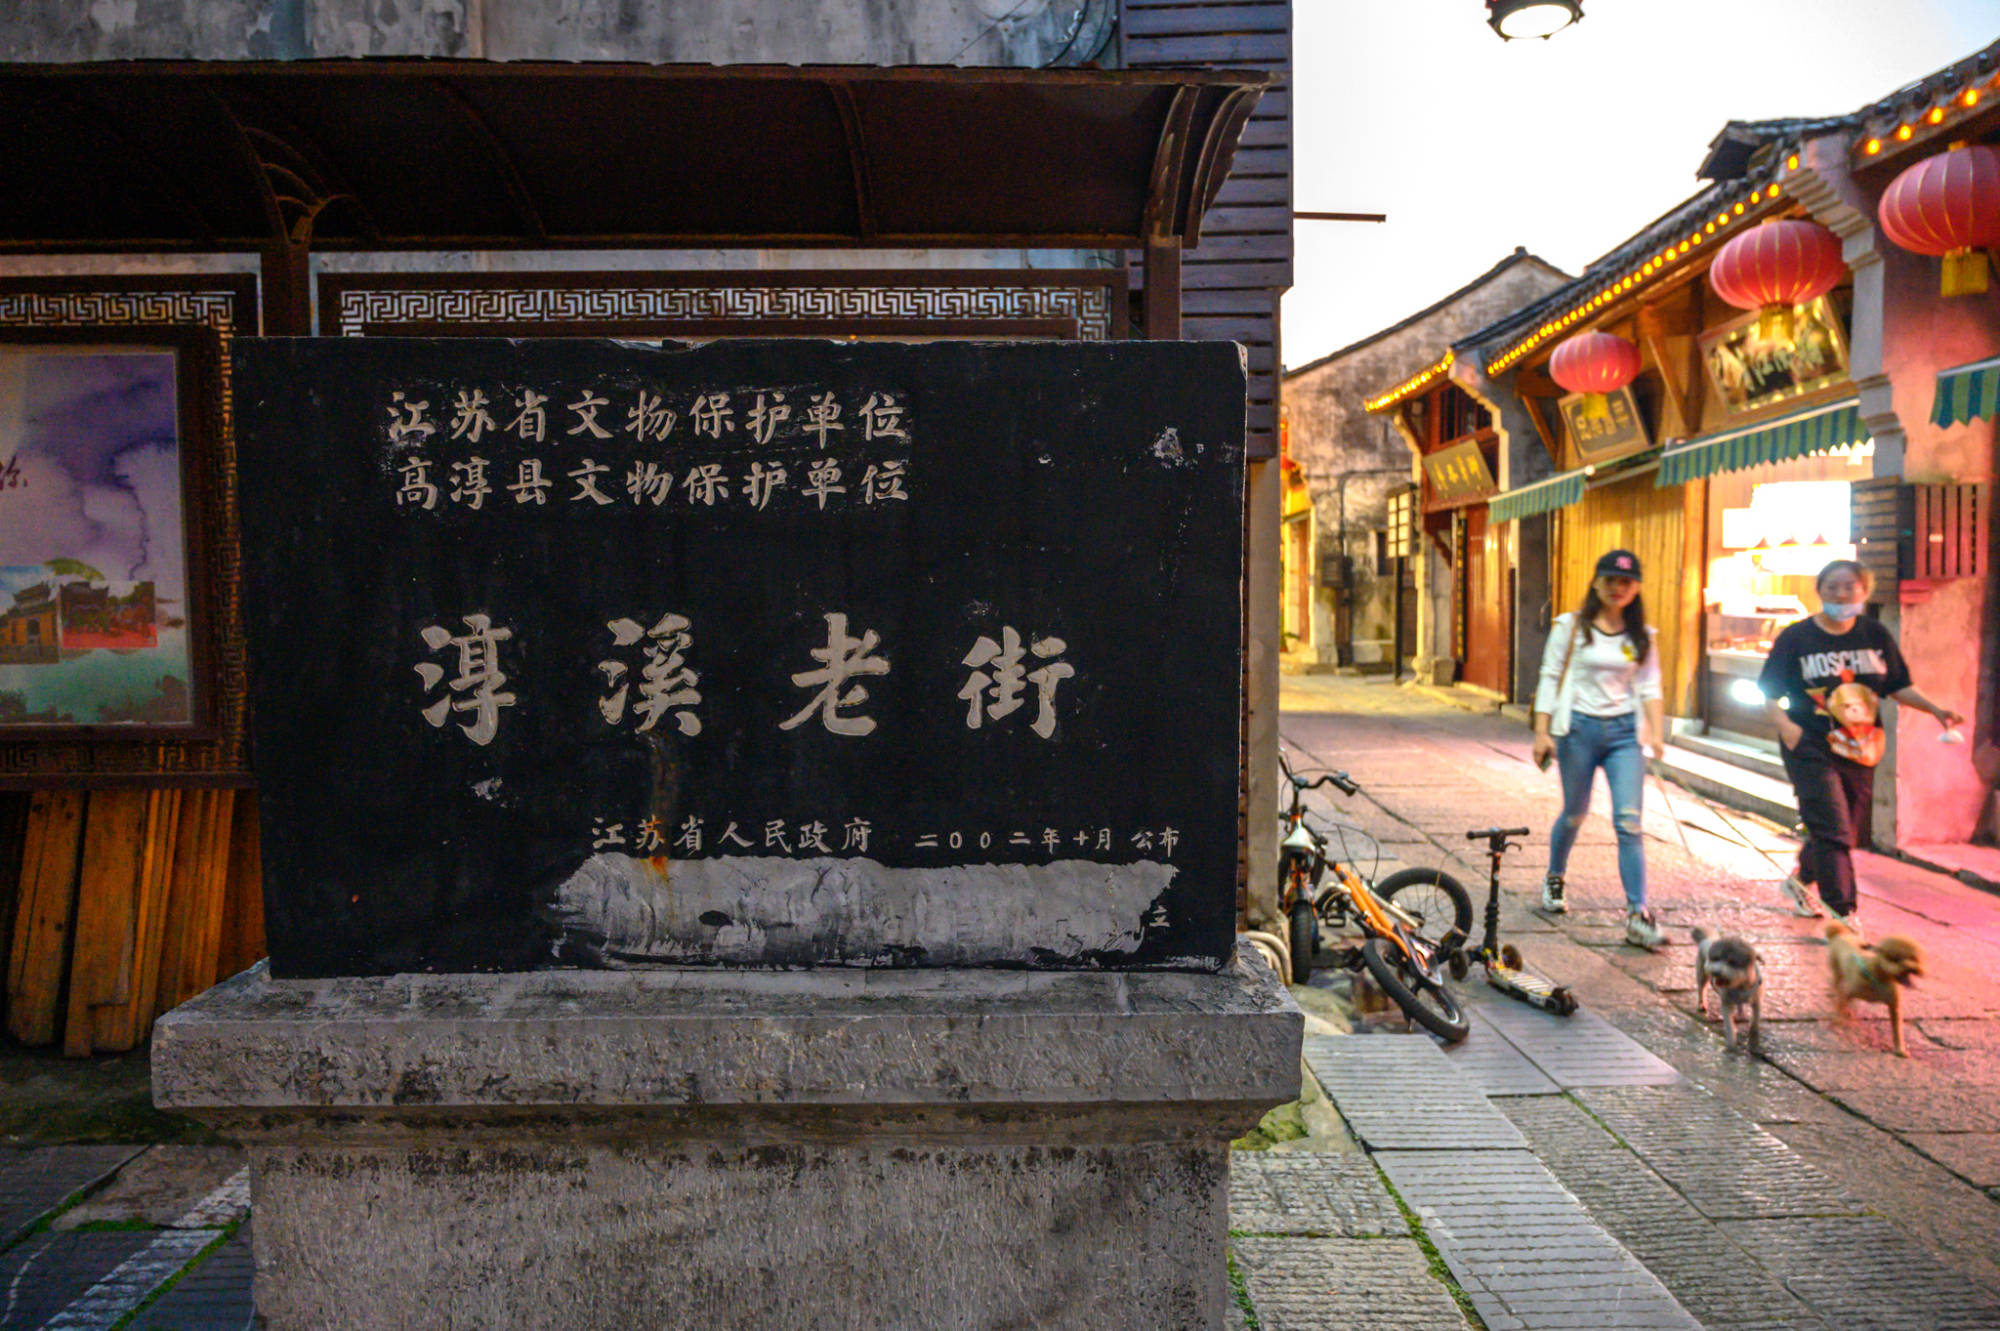 江苏有一条老街,可媲美南京夫子庙,被誉为 金陵第一古街